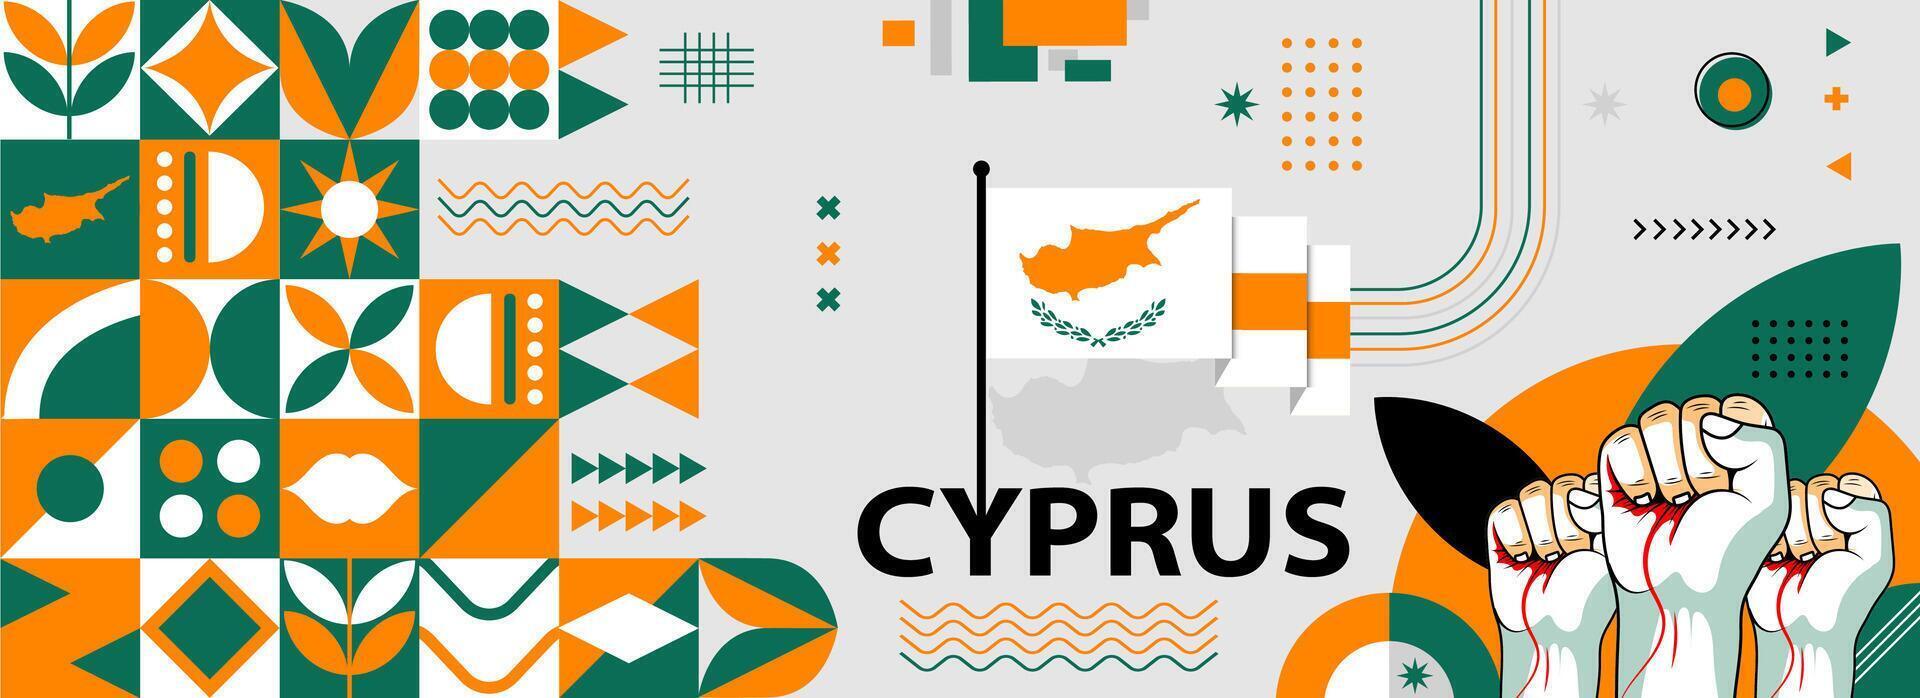 Zypern National oder Unabhängigkeit Tag Banner zum Land Feier. Zypern Flagge Karte mit angehoben Fäuste. modern retro Design mit Typorgaphie abstrakt geometrisch Symbole. Vektor Illustration